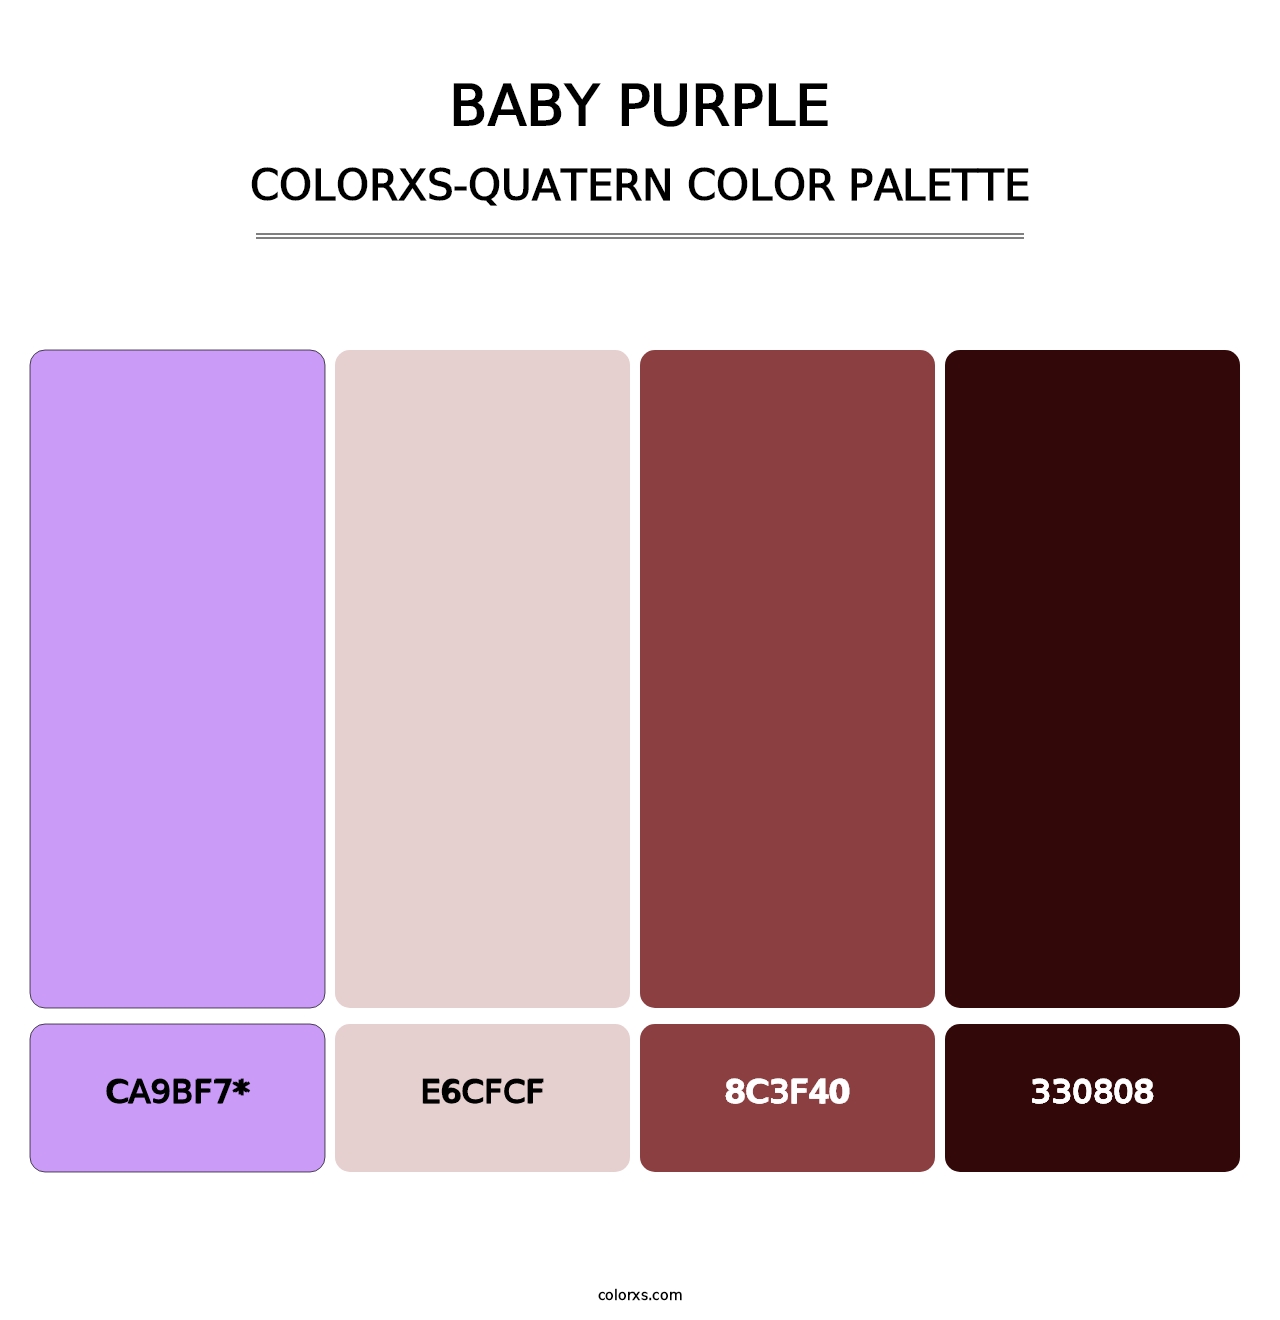 Baby Purple - Colorxs Quatern Palette